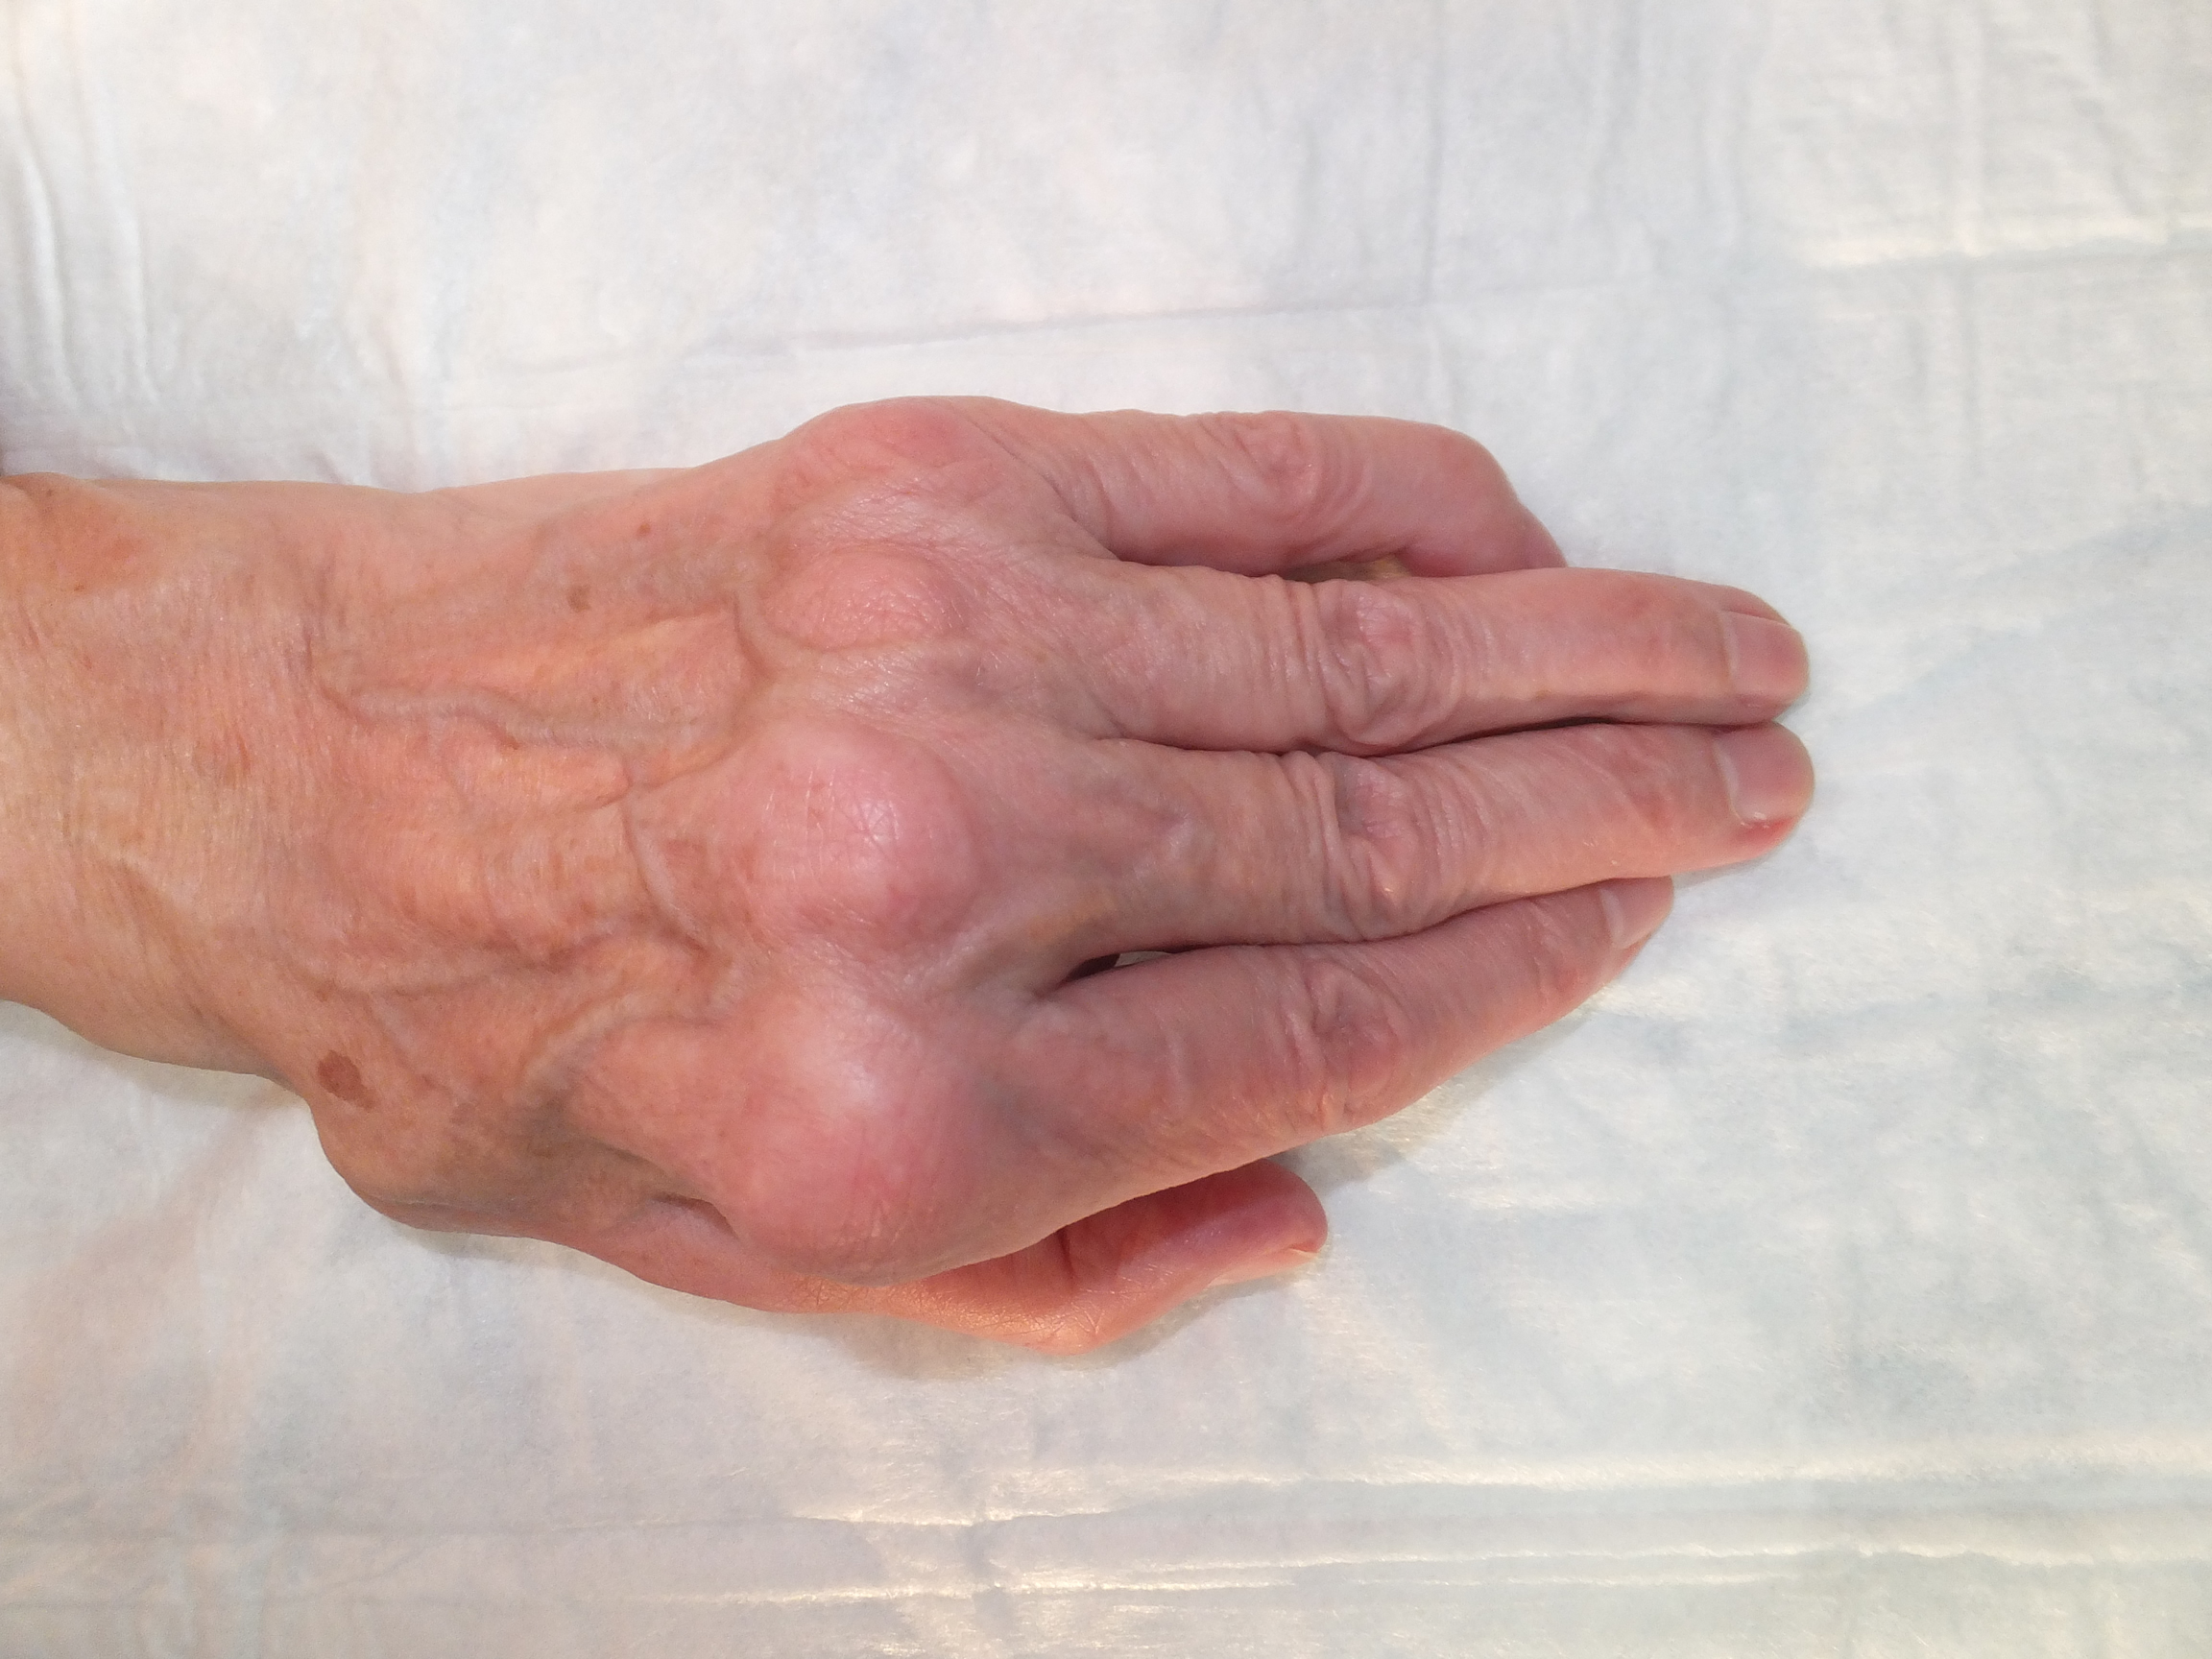 Wrist involvement in rheumatoid arthritis